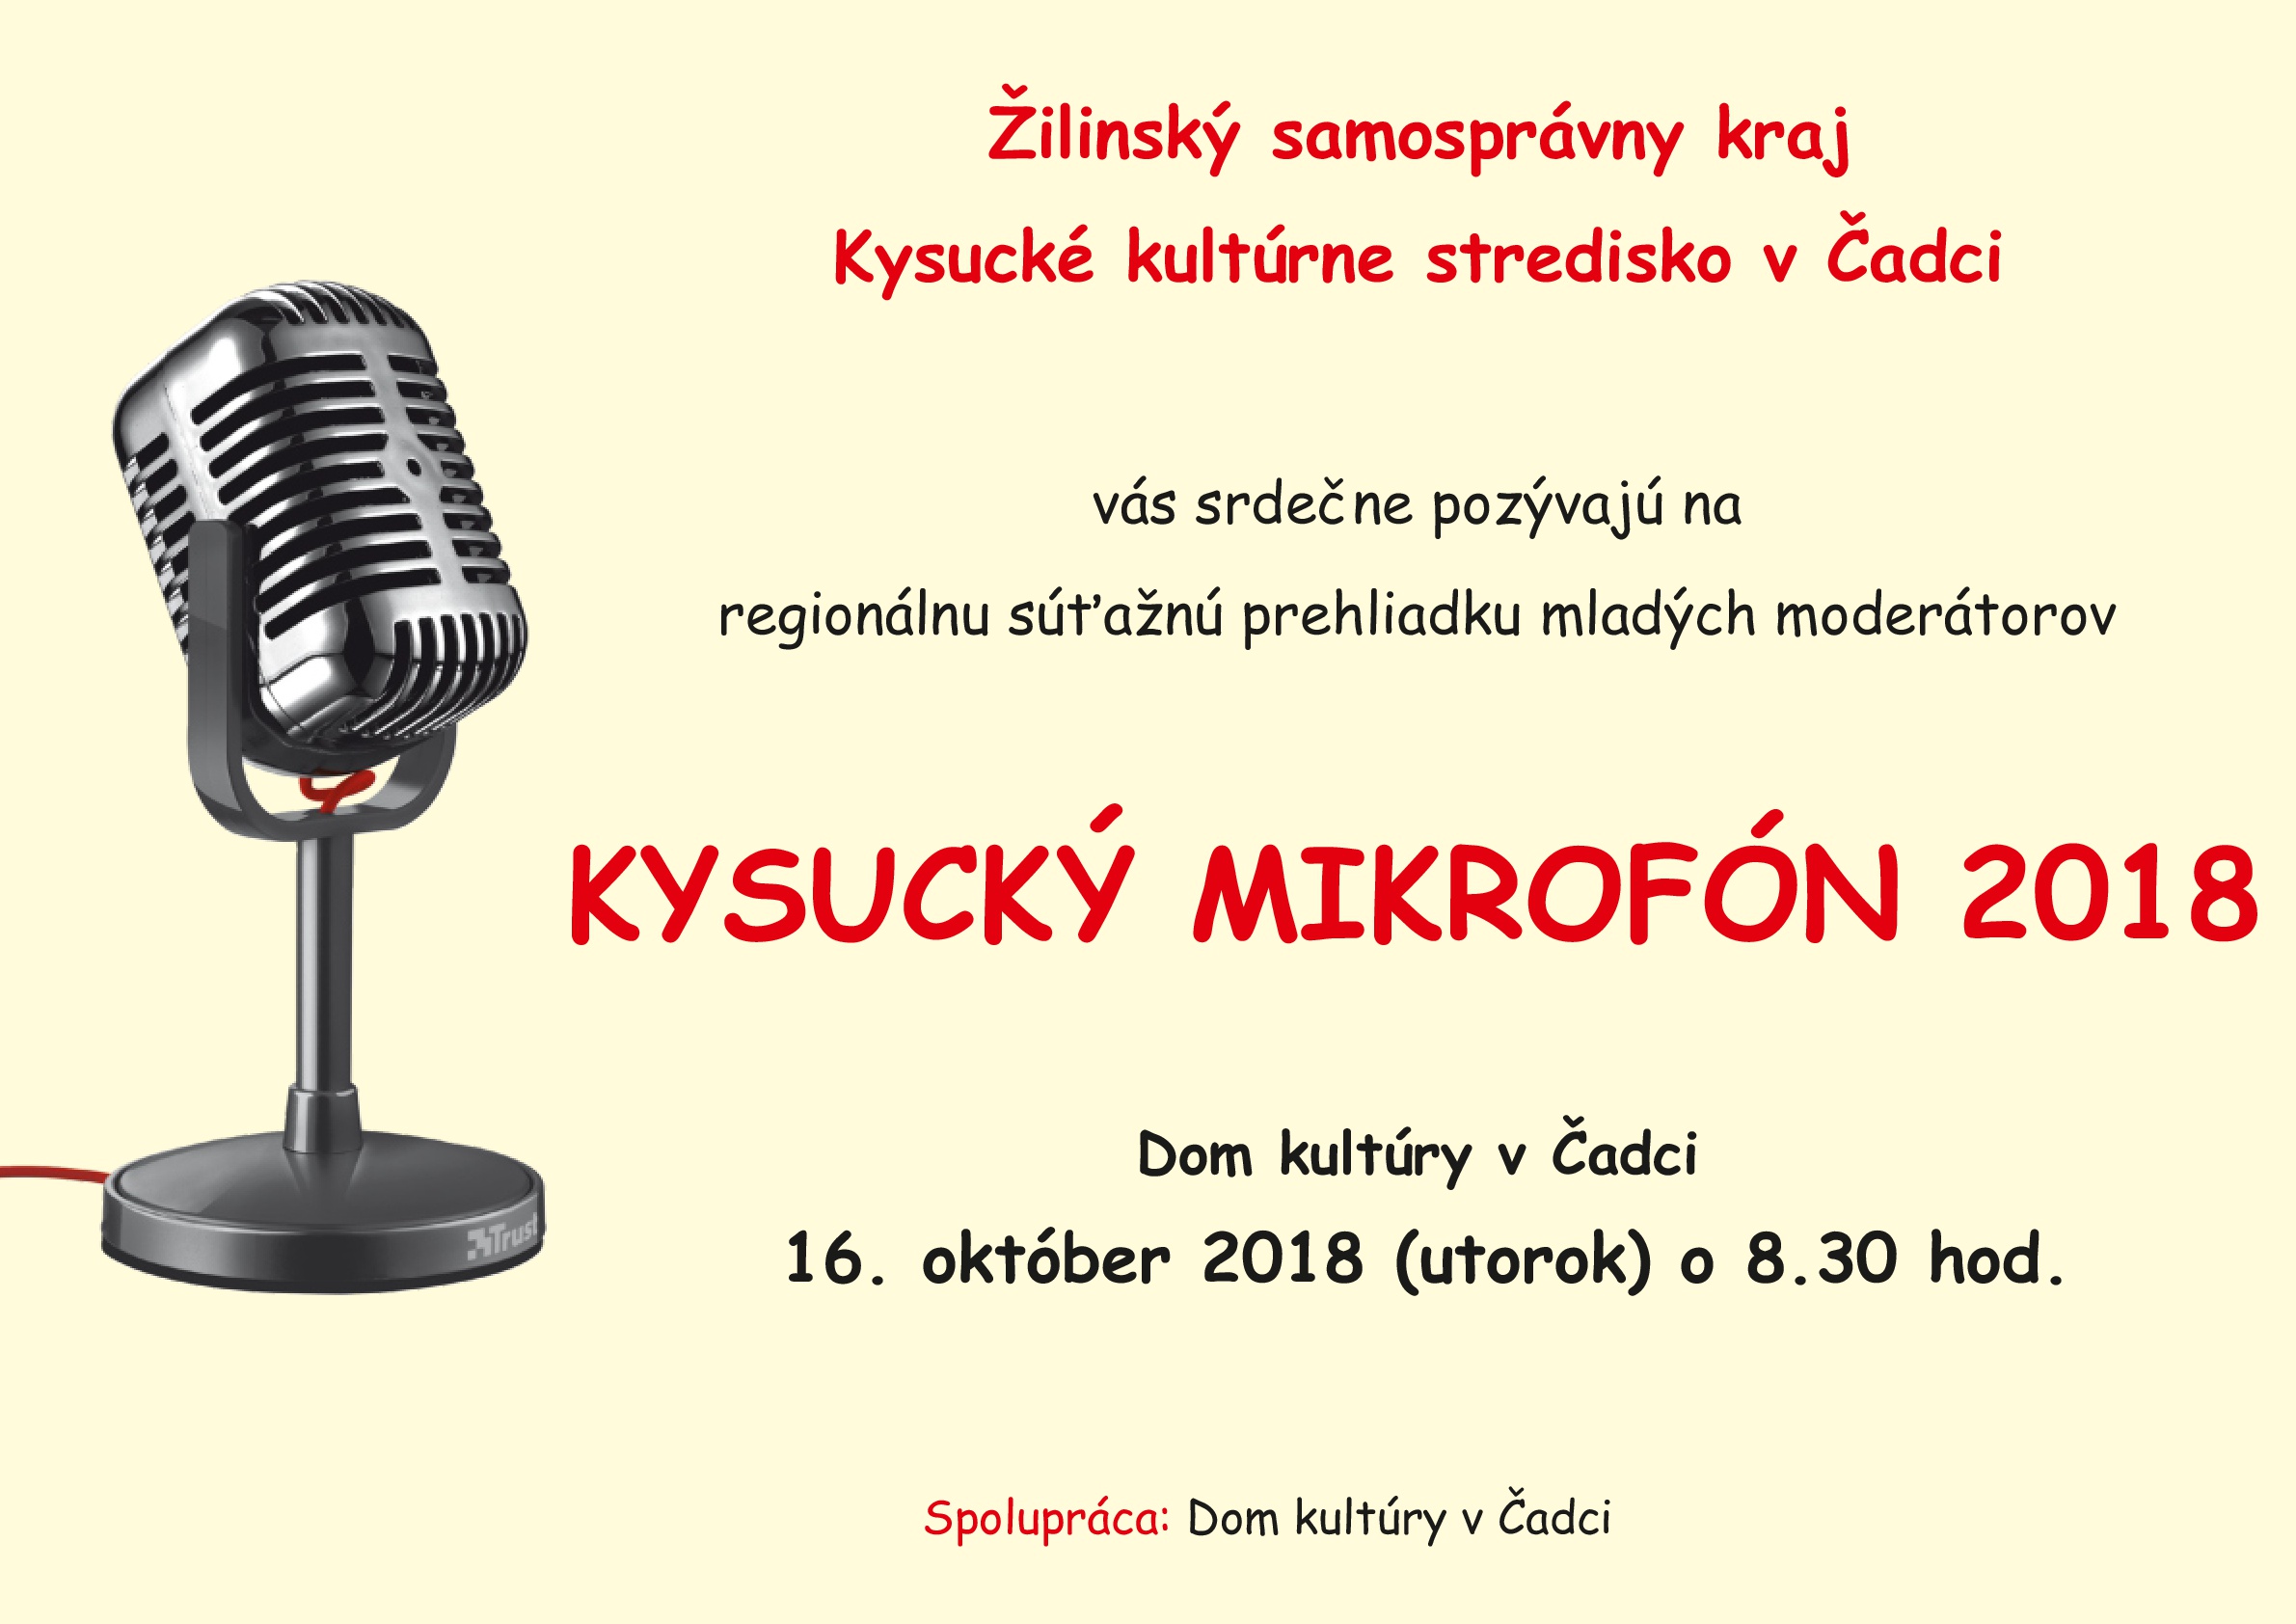 Kysucky mikrofon 2018 001